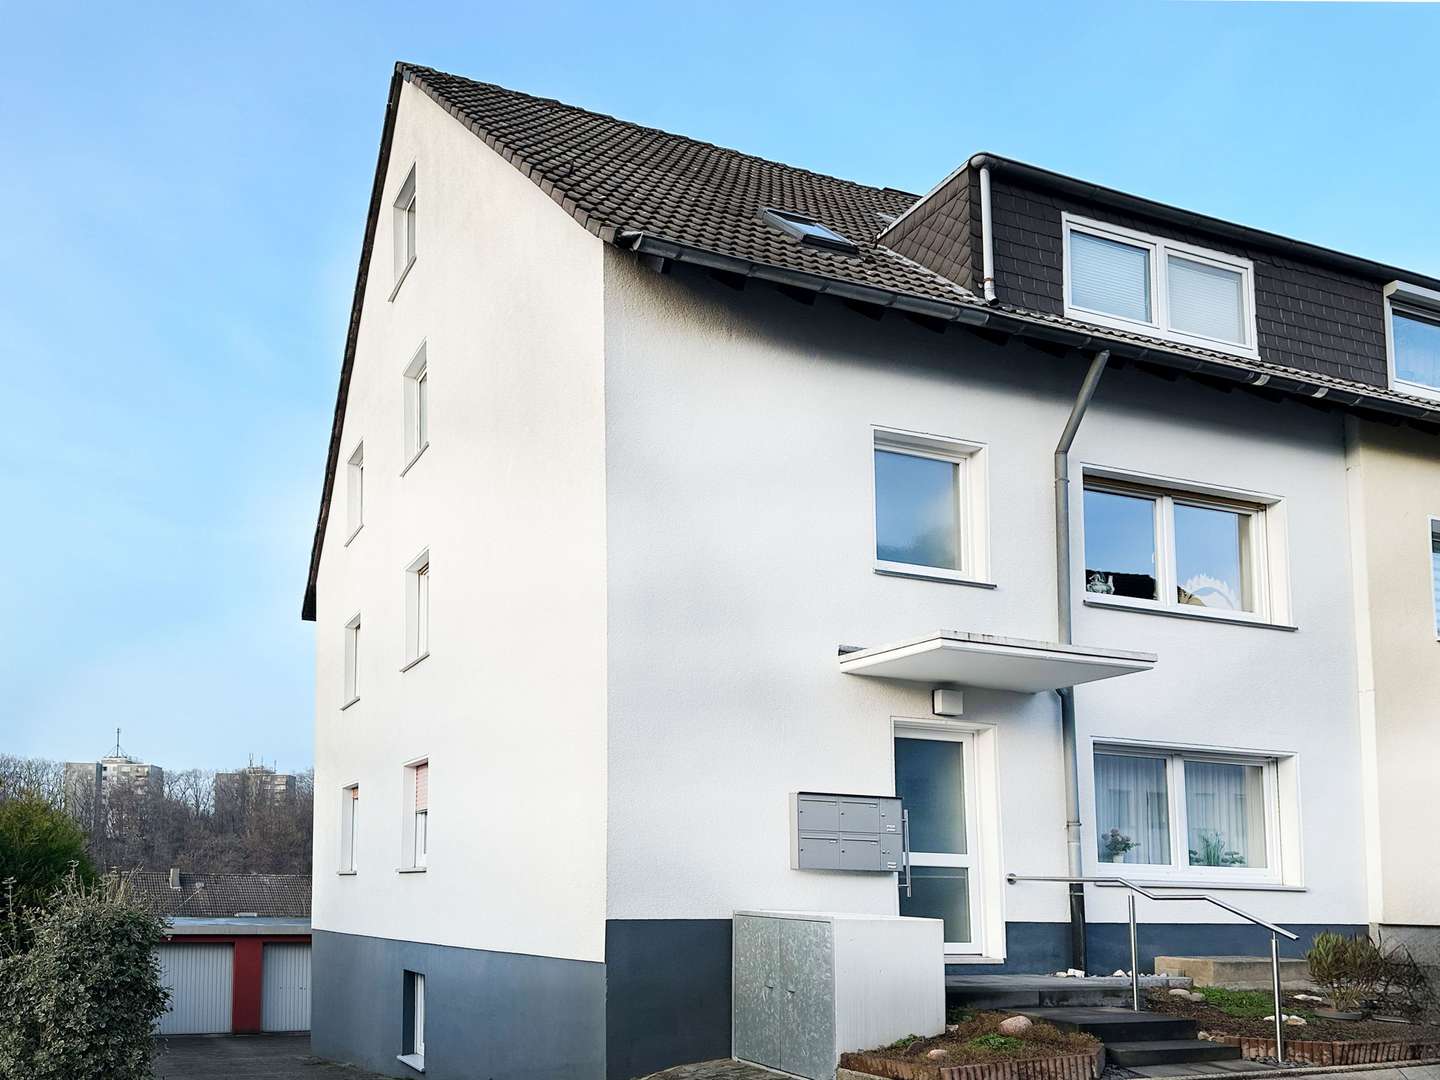 Vorderansicht - Mehrfamilienhaus in 44879 Bochum mit 276m² als Kapitalanlage kaufen